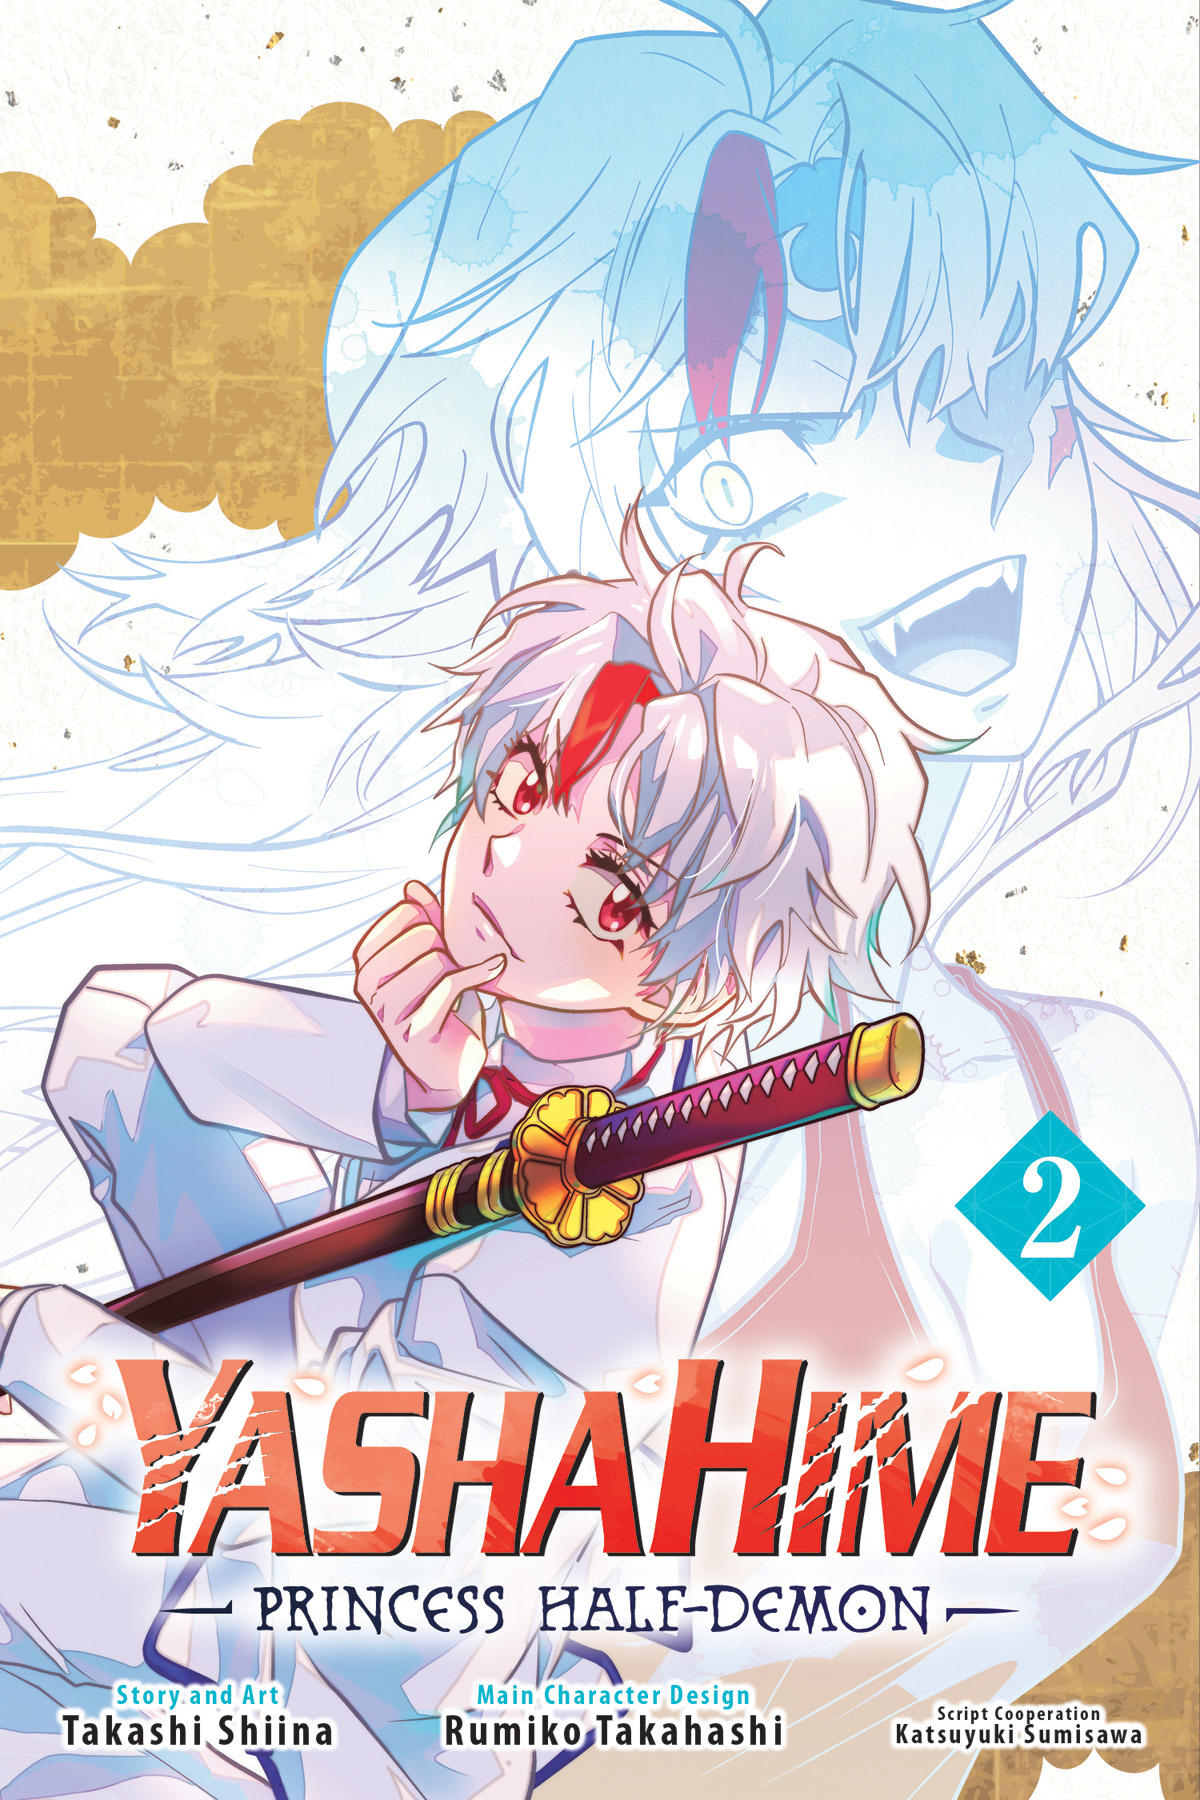 Yashahime Princess Half Demon Manga Volume 2